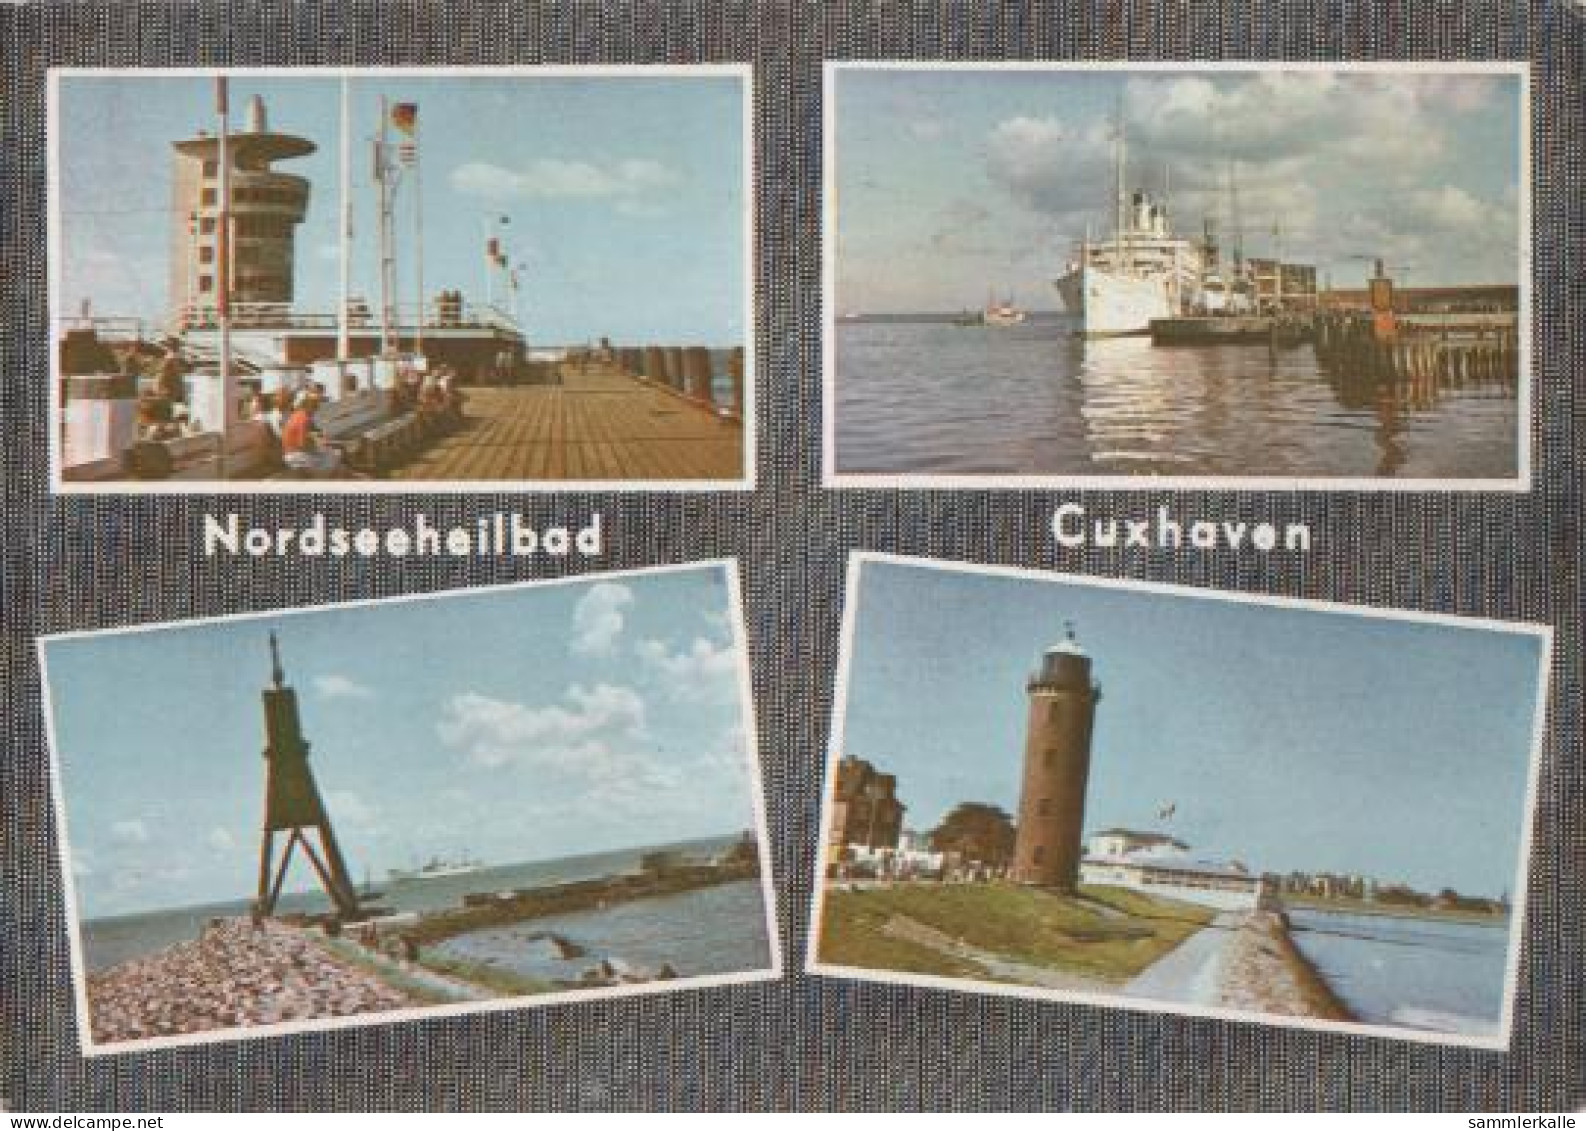 23146 - Nordseeheilbad Cuxhaven - Ca. 1965 - Cuxhaven